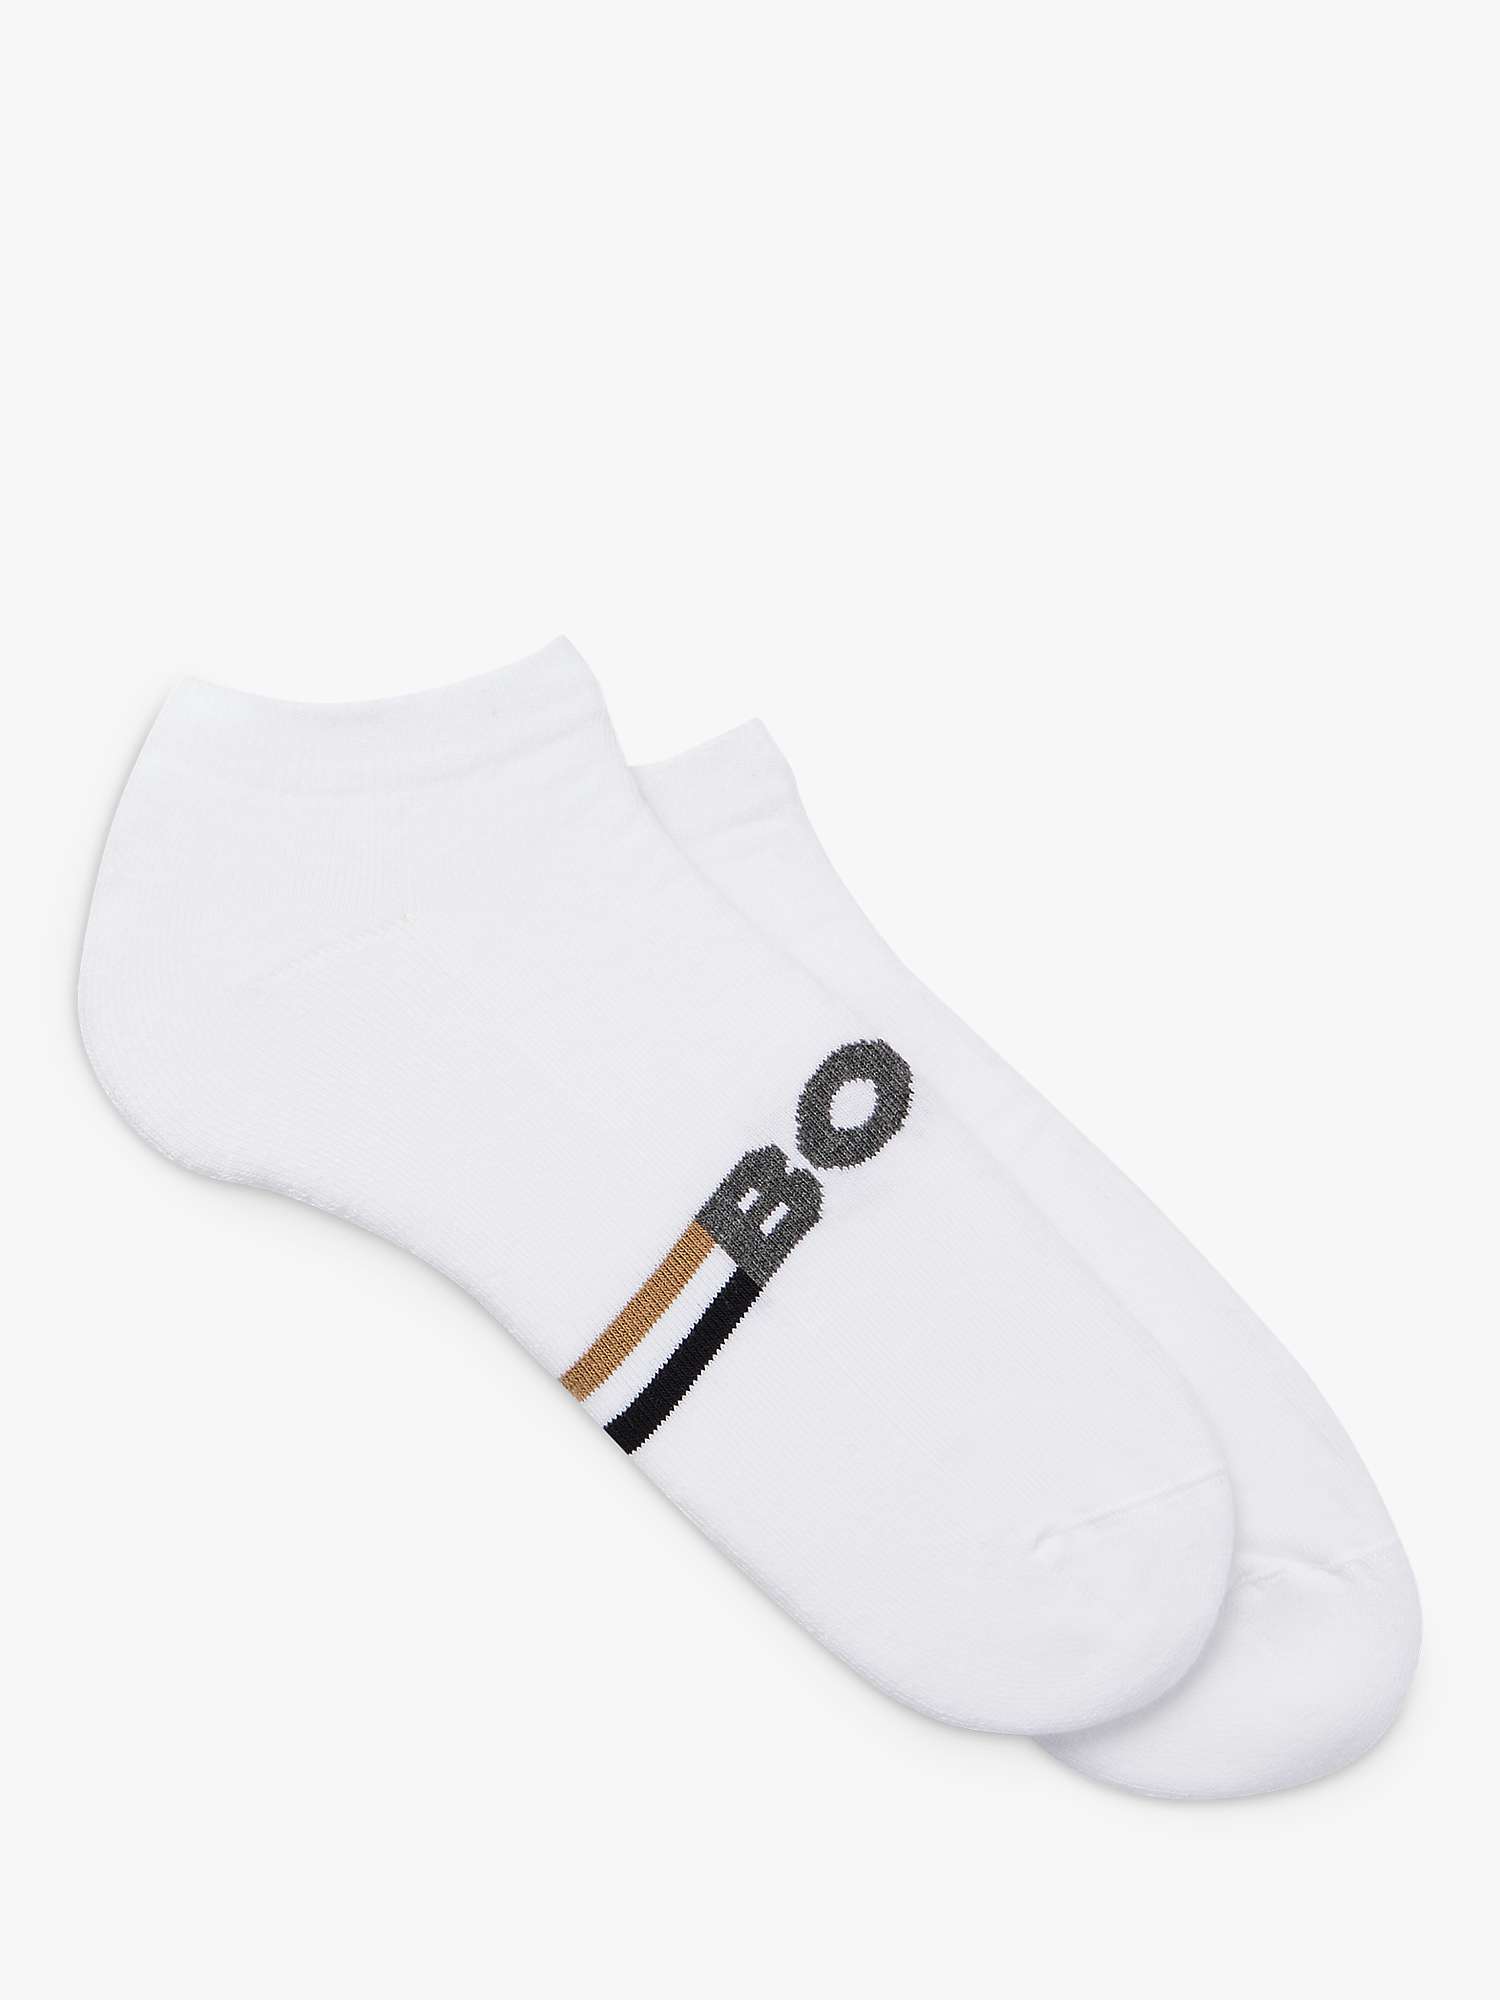 Buy BOSS Iconic Stripe Design Ankle Socks, Pack of 2, White Online at johnlewis.com